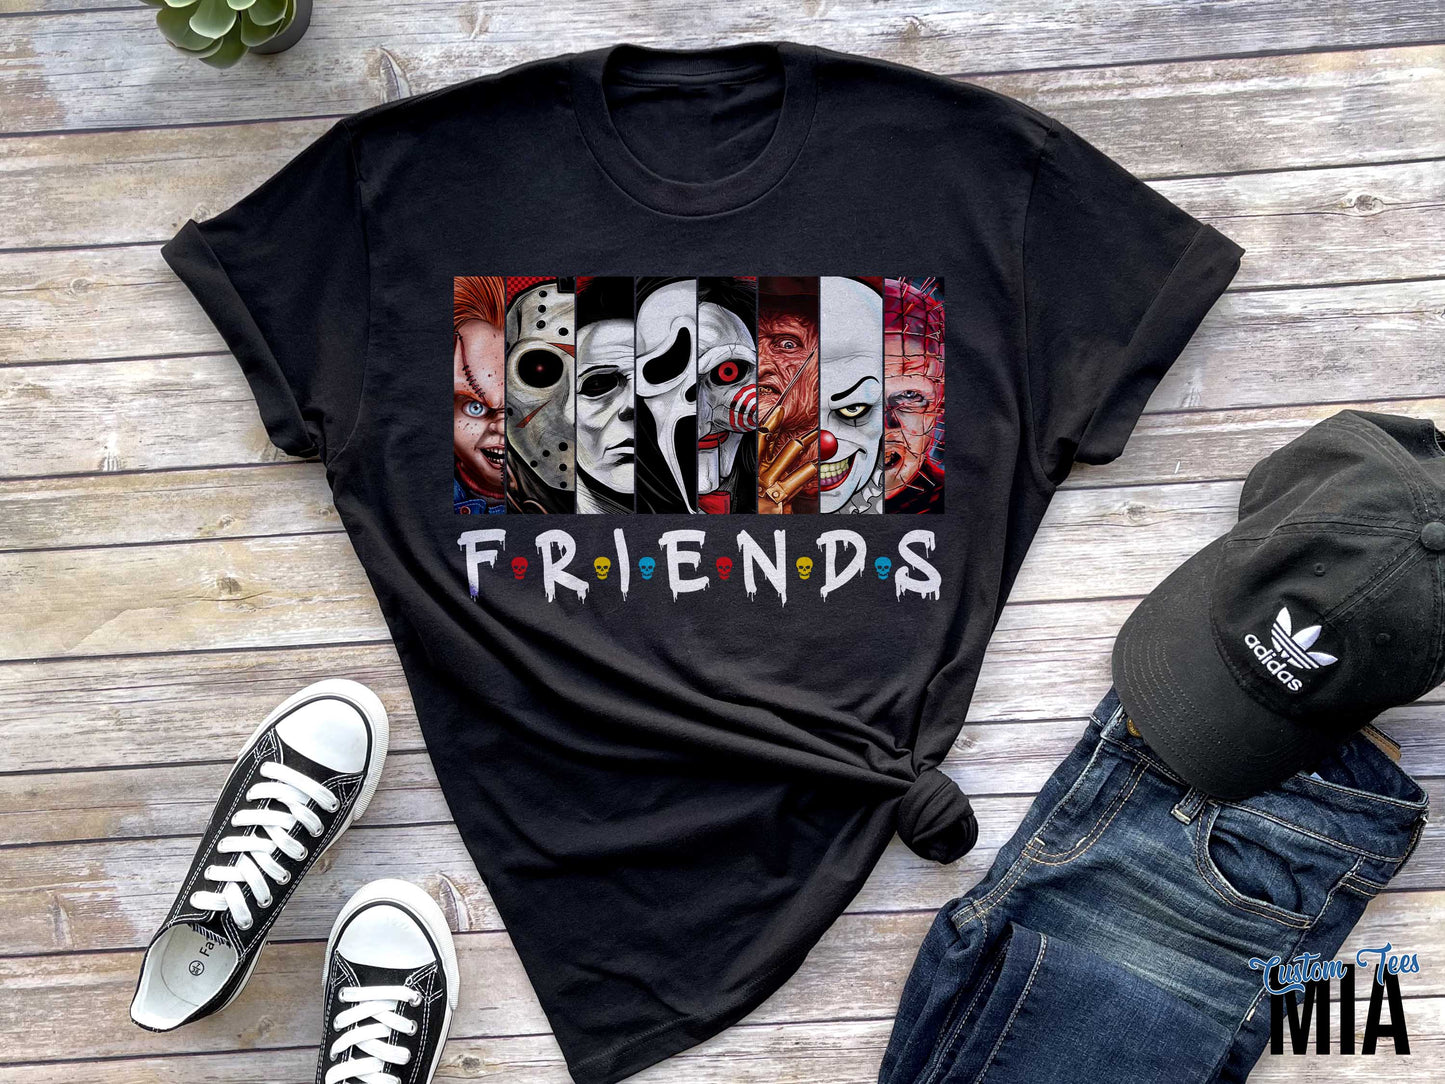 Halloween Classic Friends Shirt